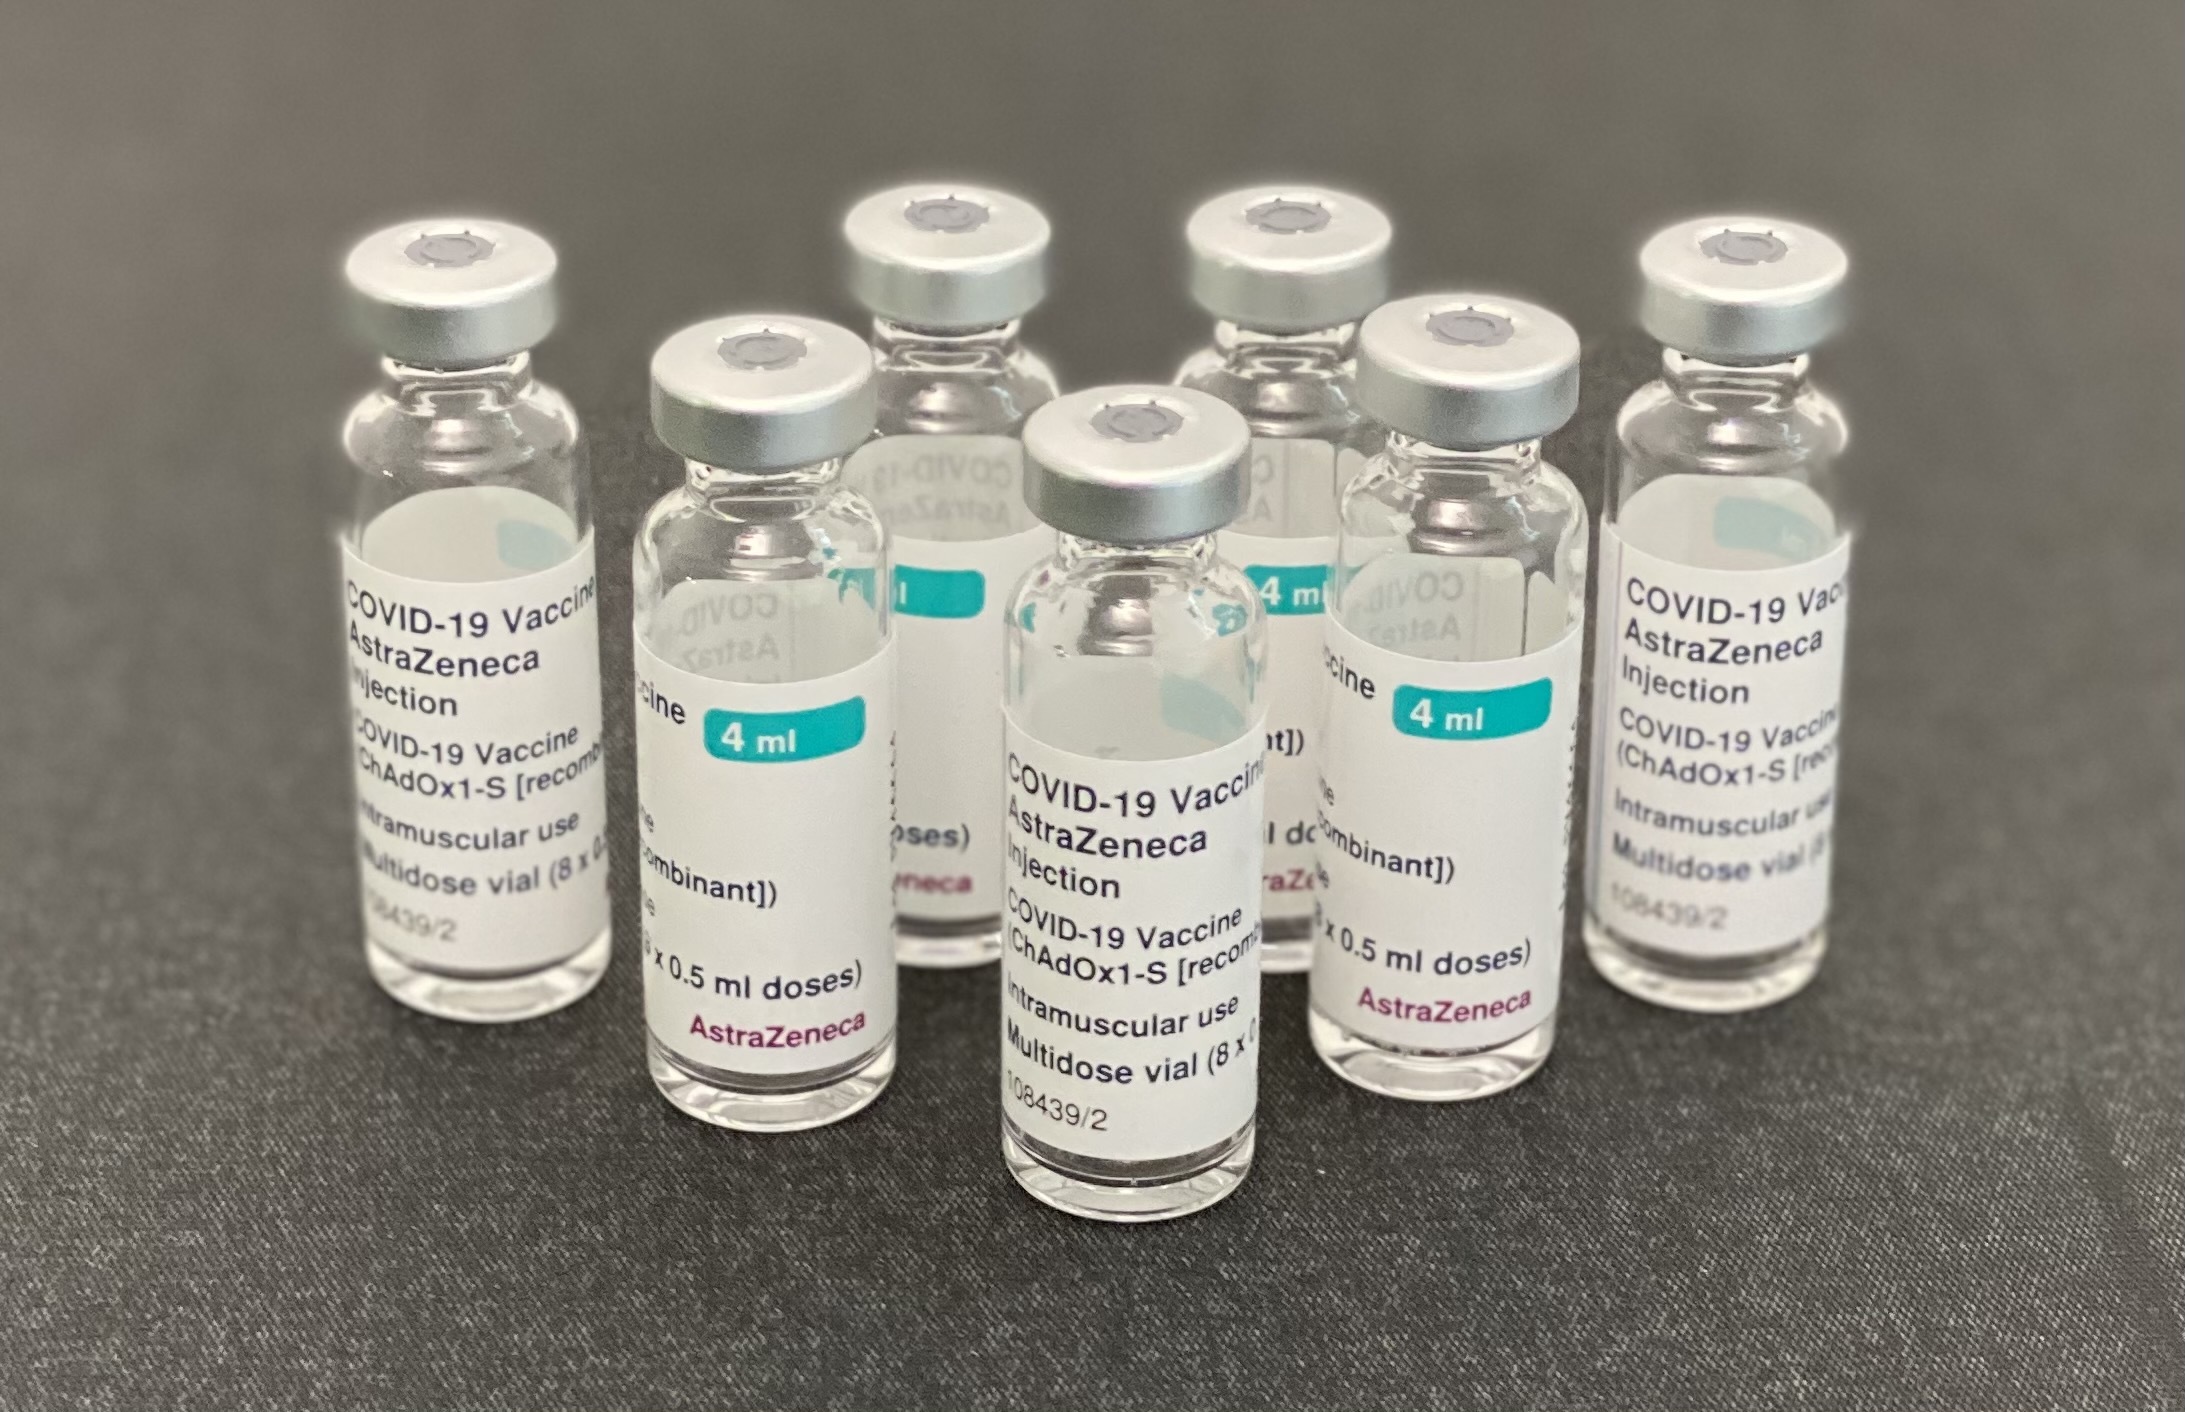 Компания AstraZeneca отзывает свои вакцины против коронавируса из продажи по всему миру